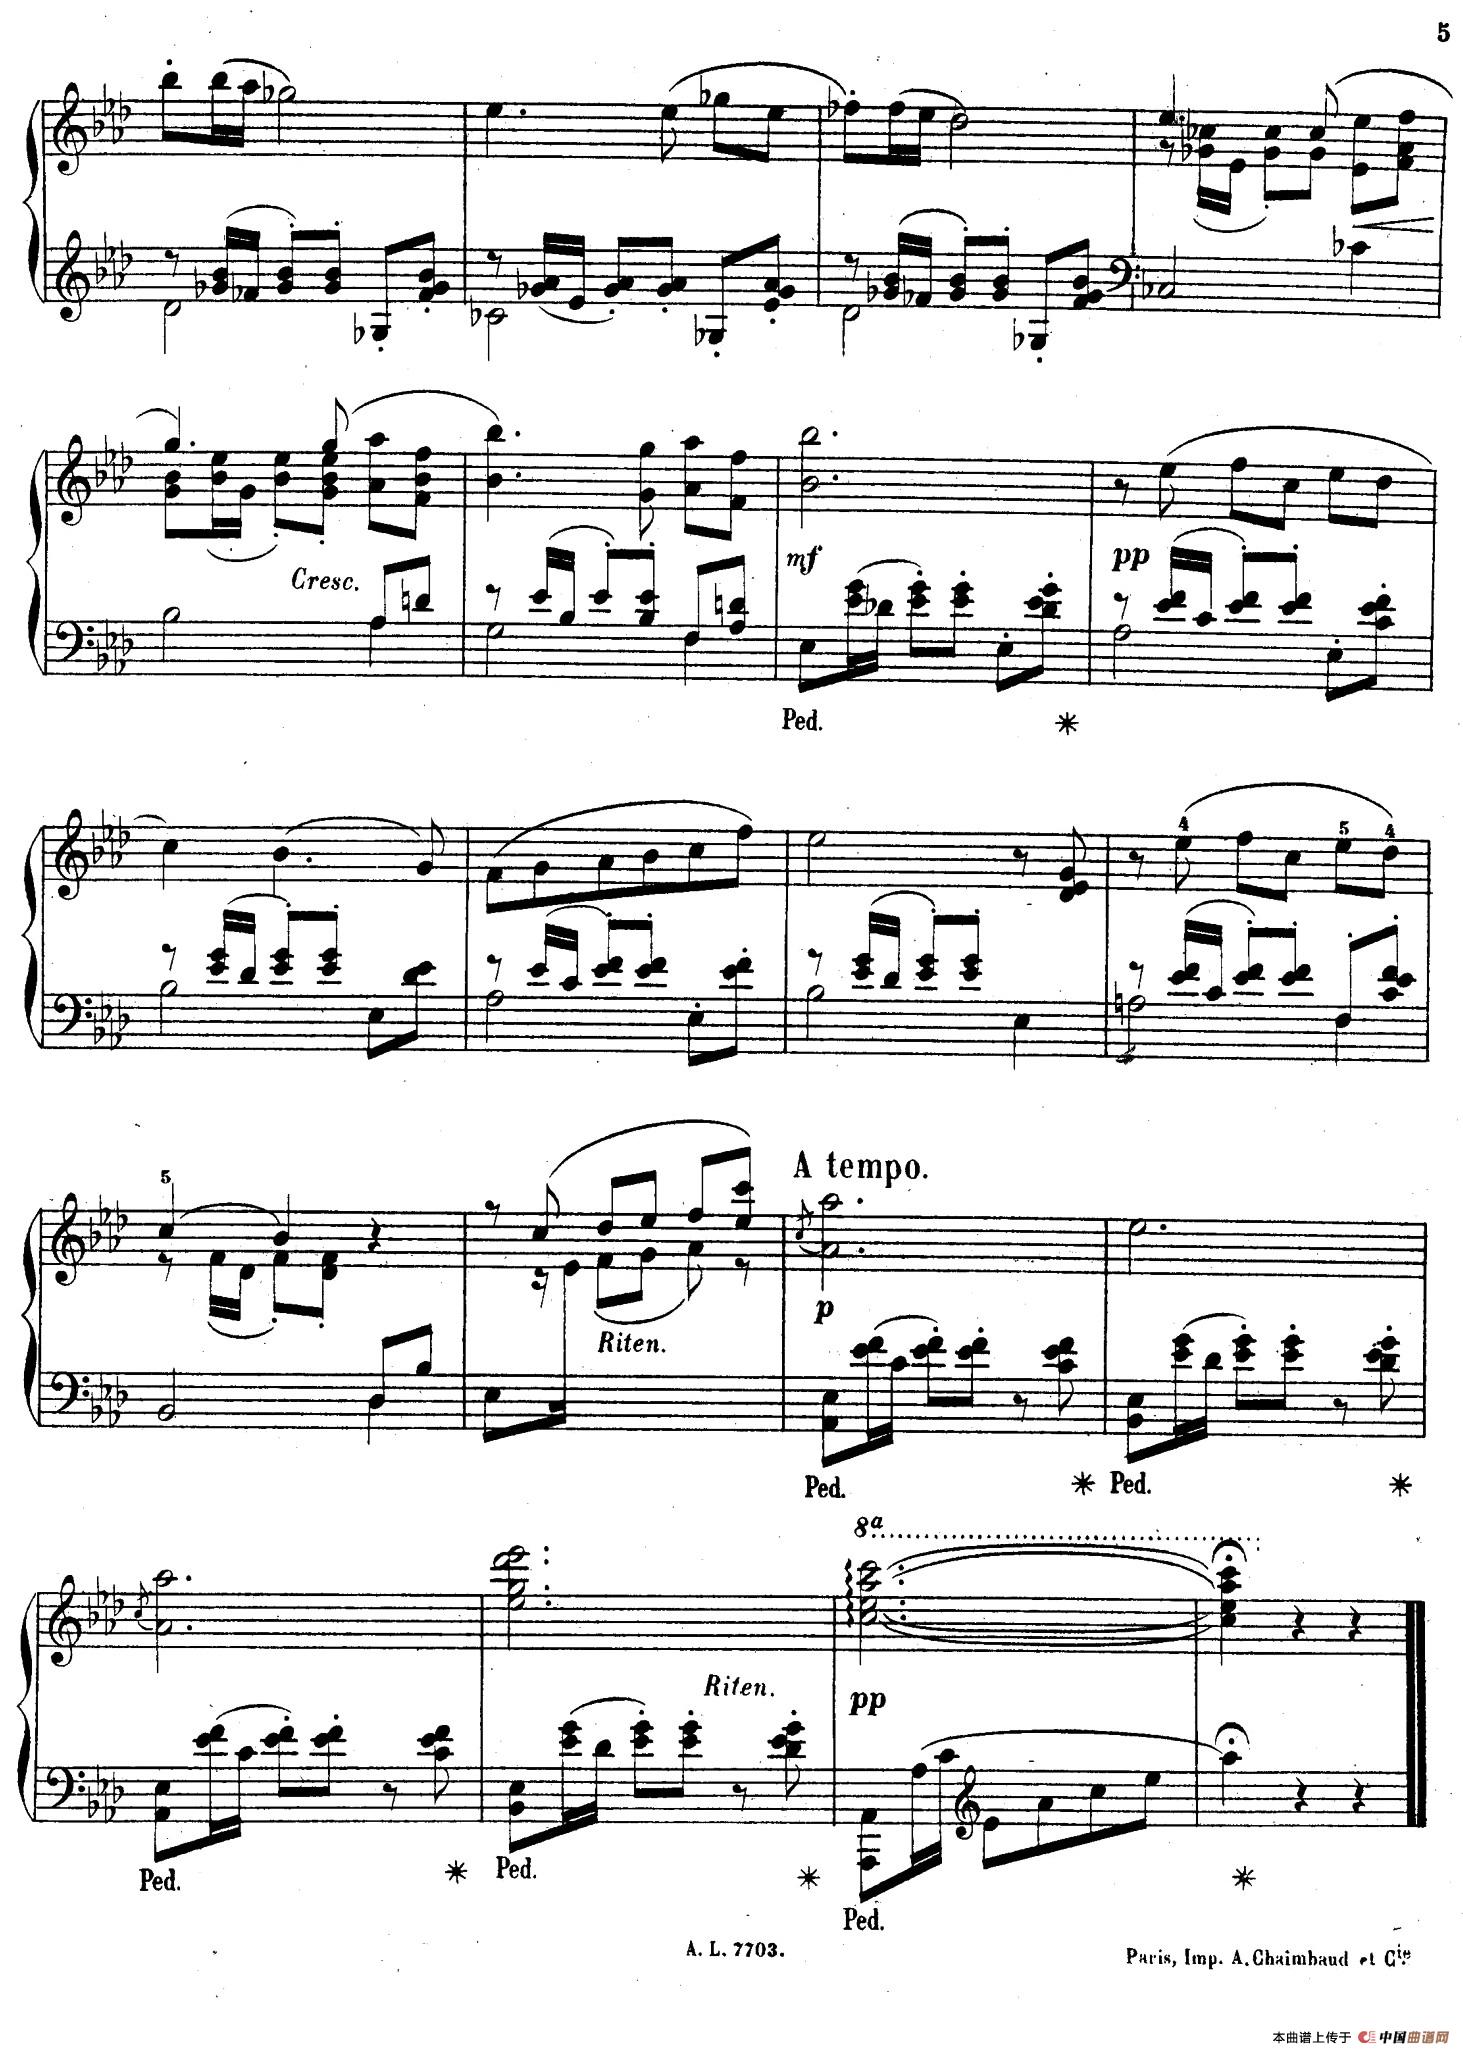 Serenade Op.7